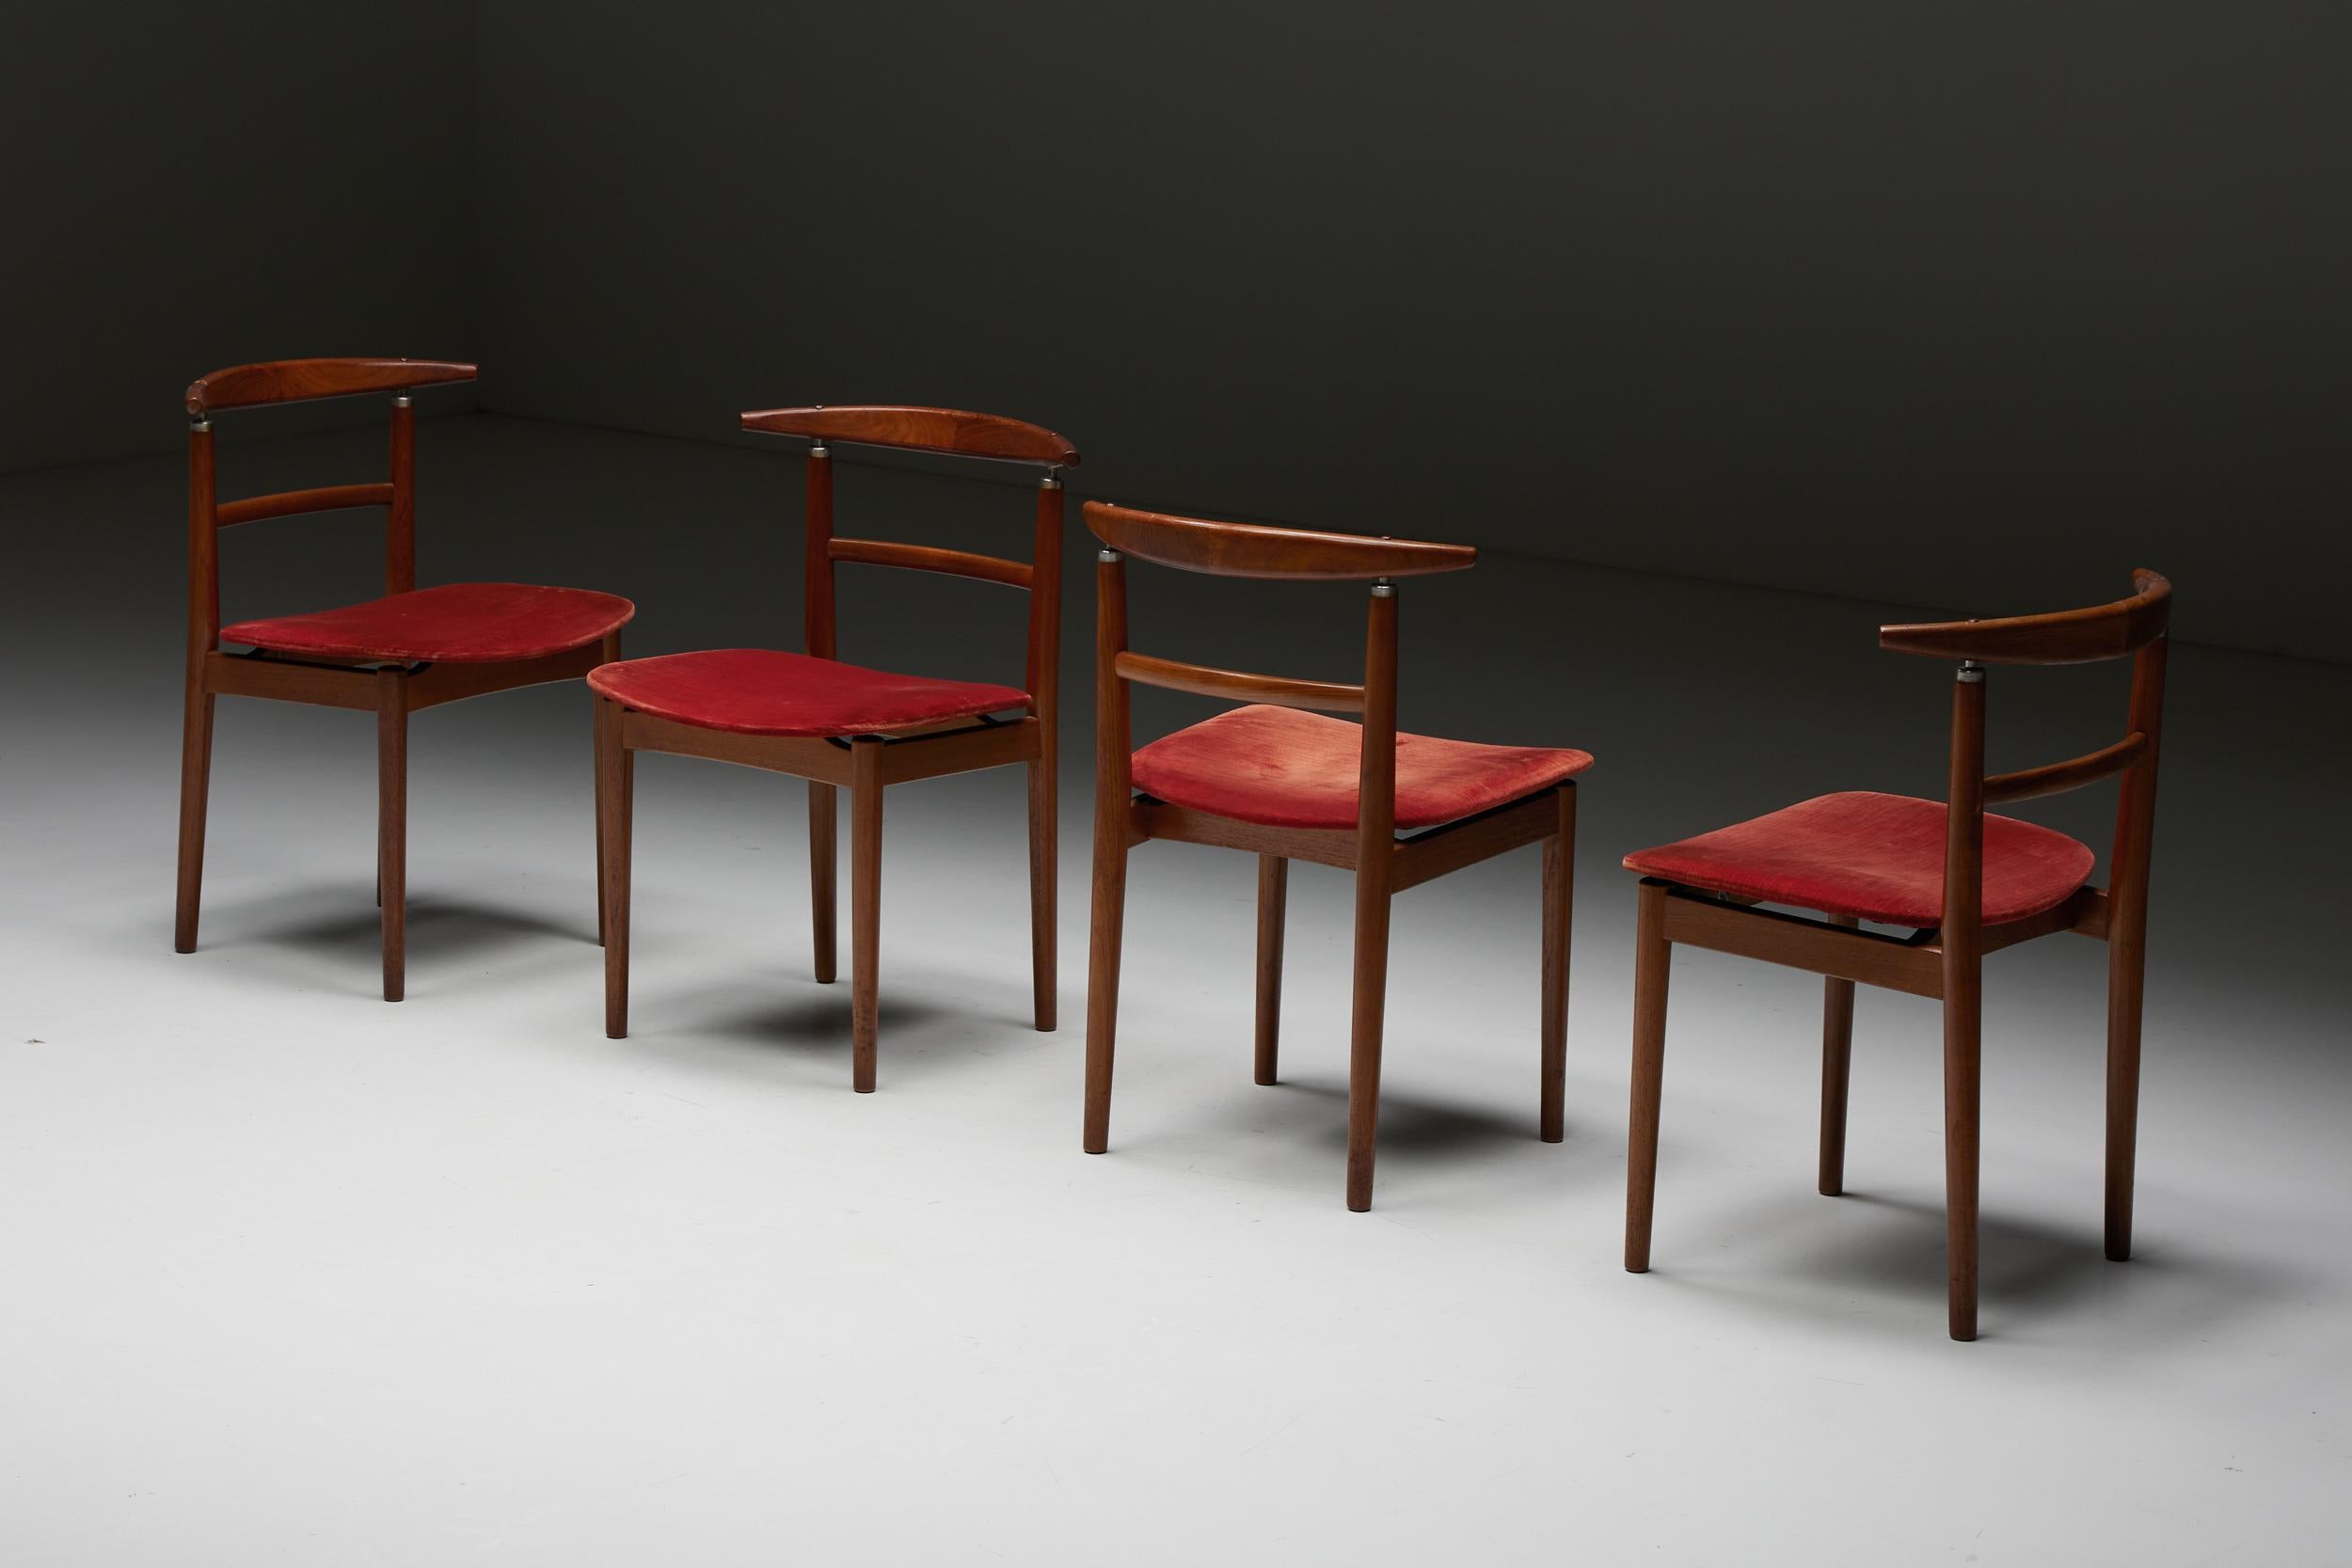 Red Velvet Dining Chairs by Helge Sibast and Borge Rammeskov for Sibast, Denmark 1